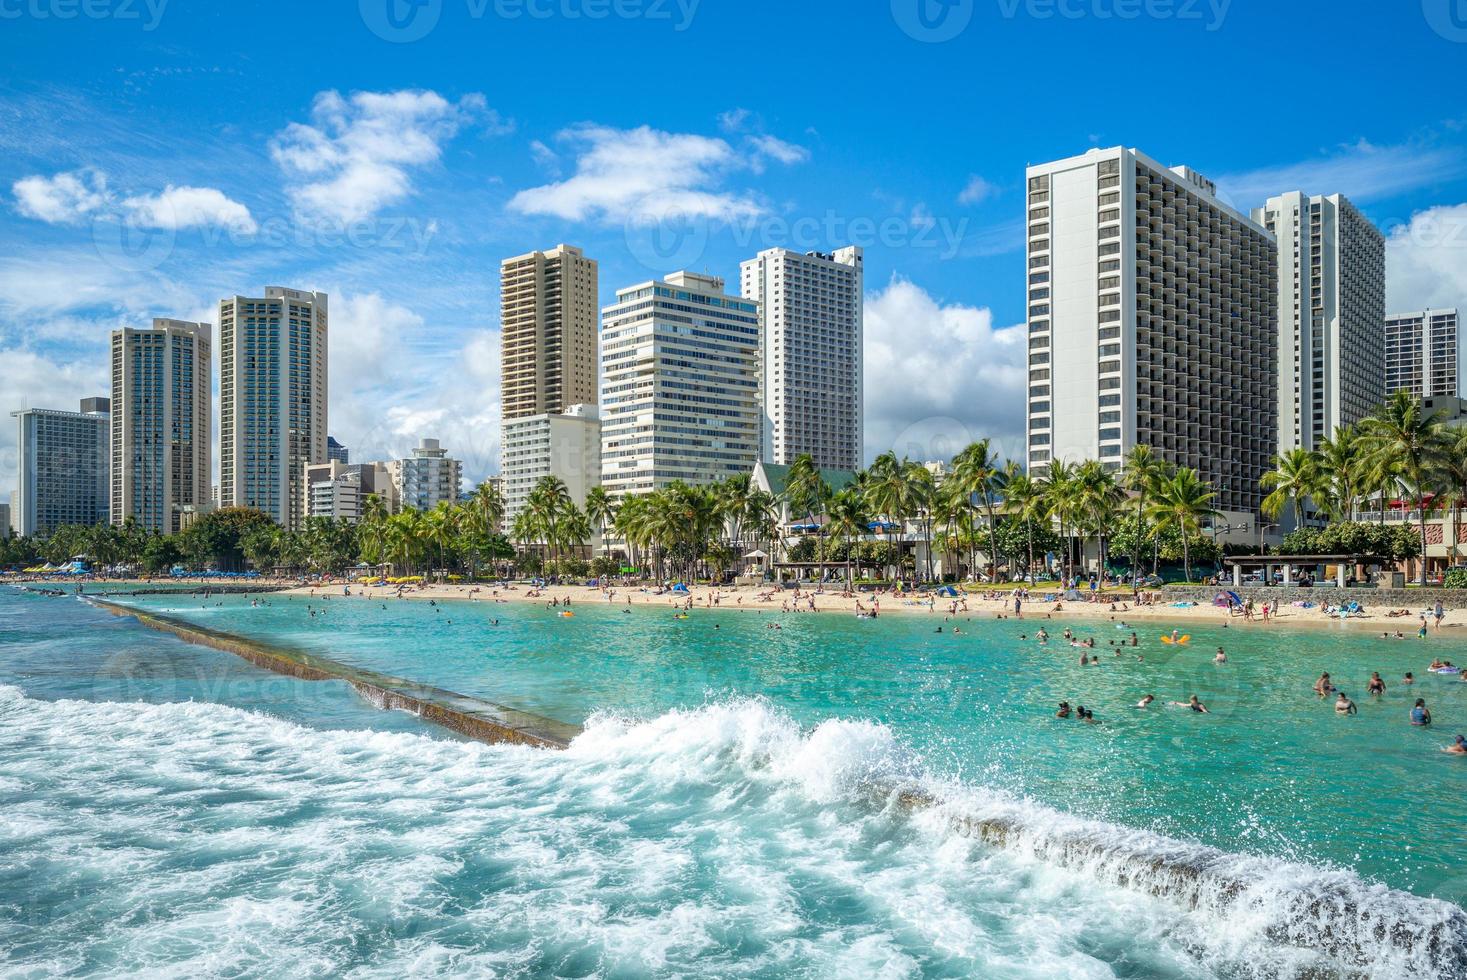 skyline van honolulu op waikiki beach hawaii ons foto